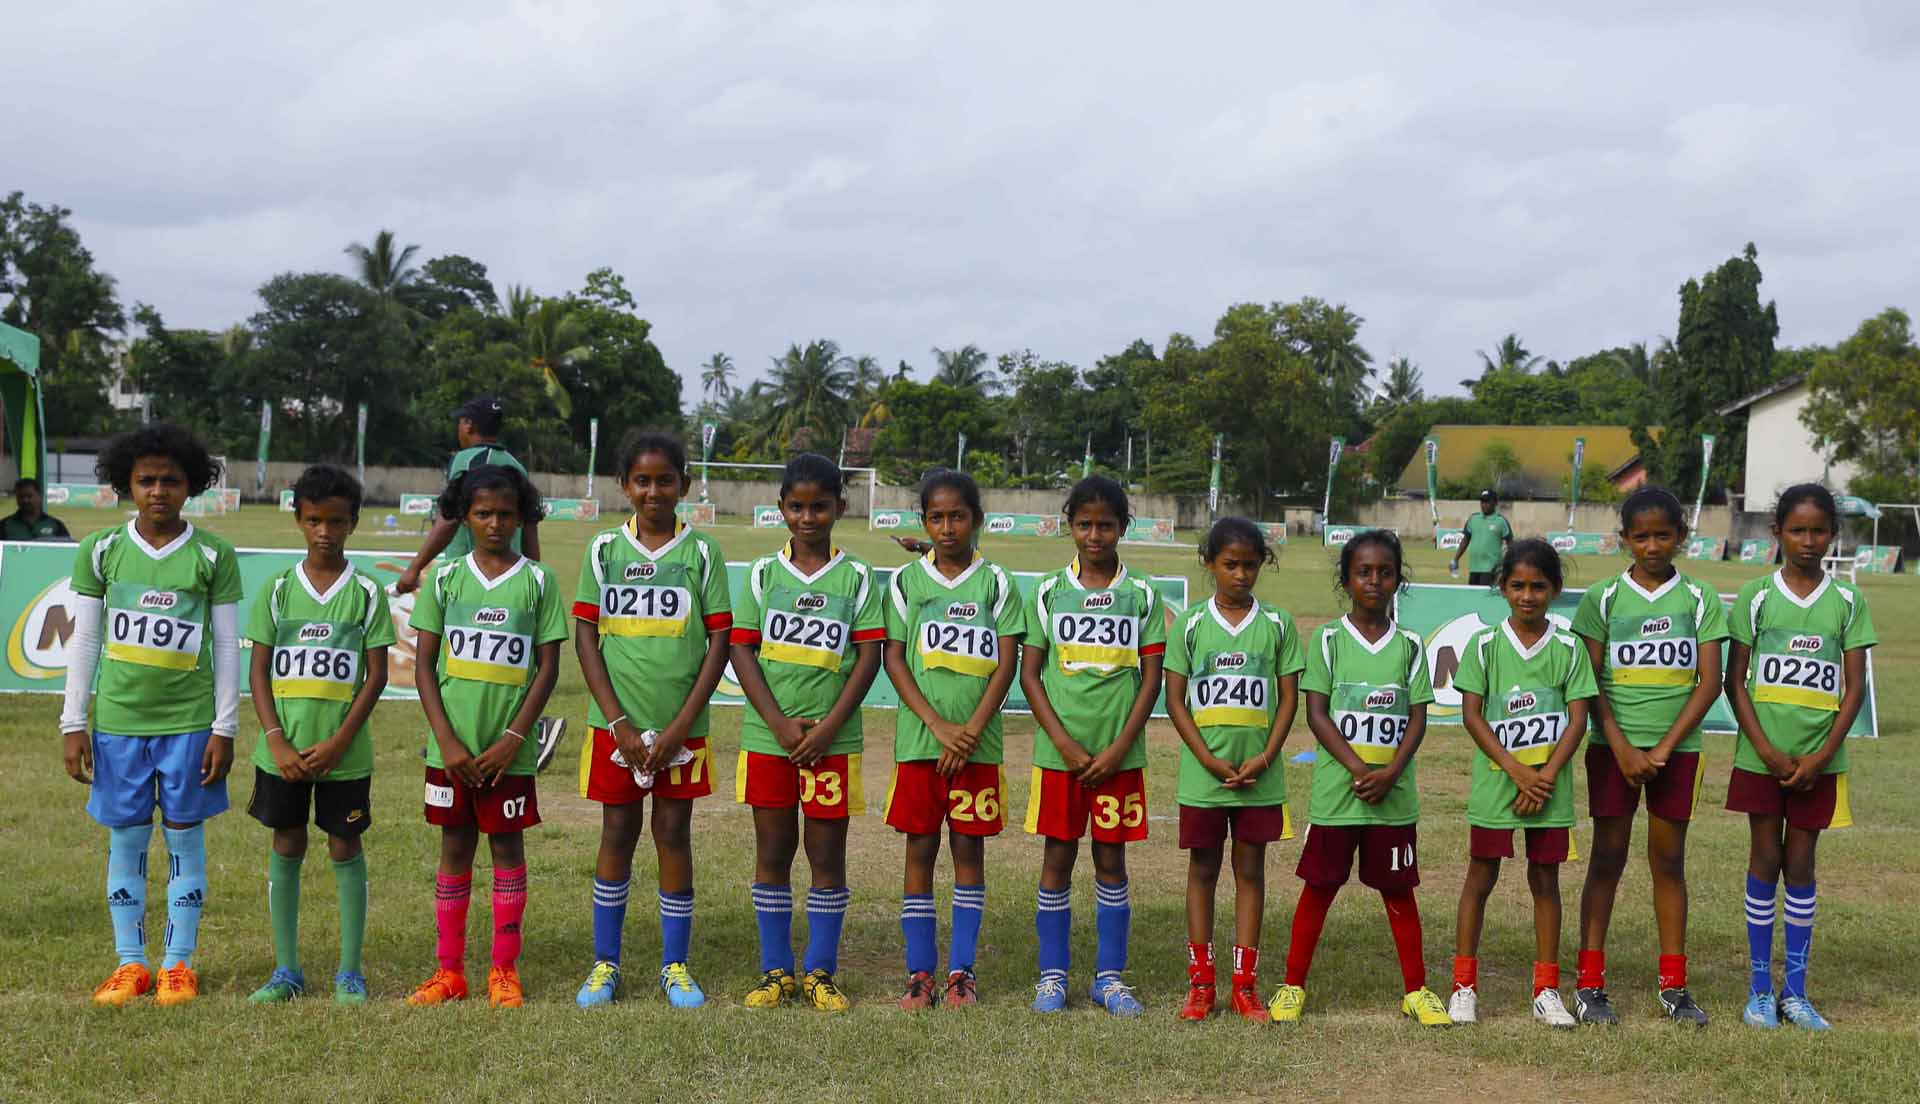 Football junior schoolgirls team practice